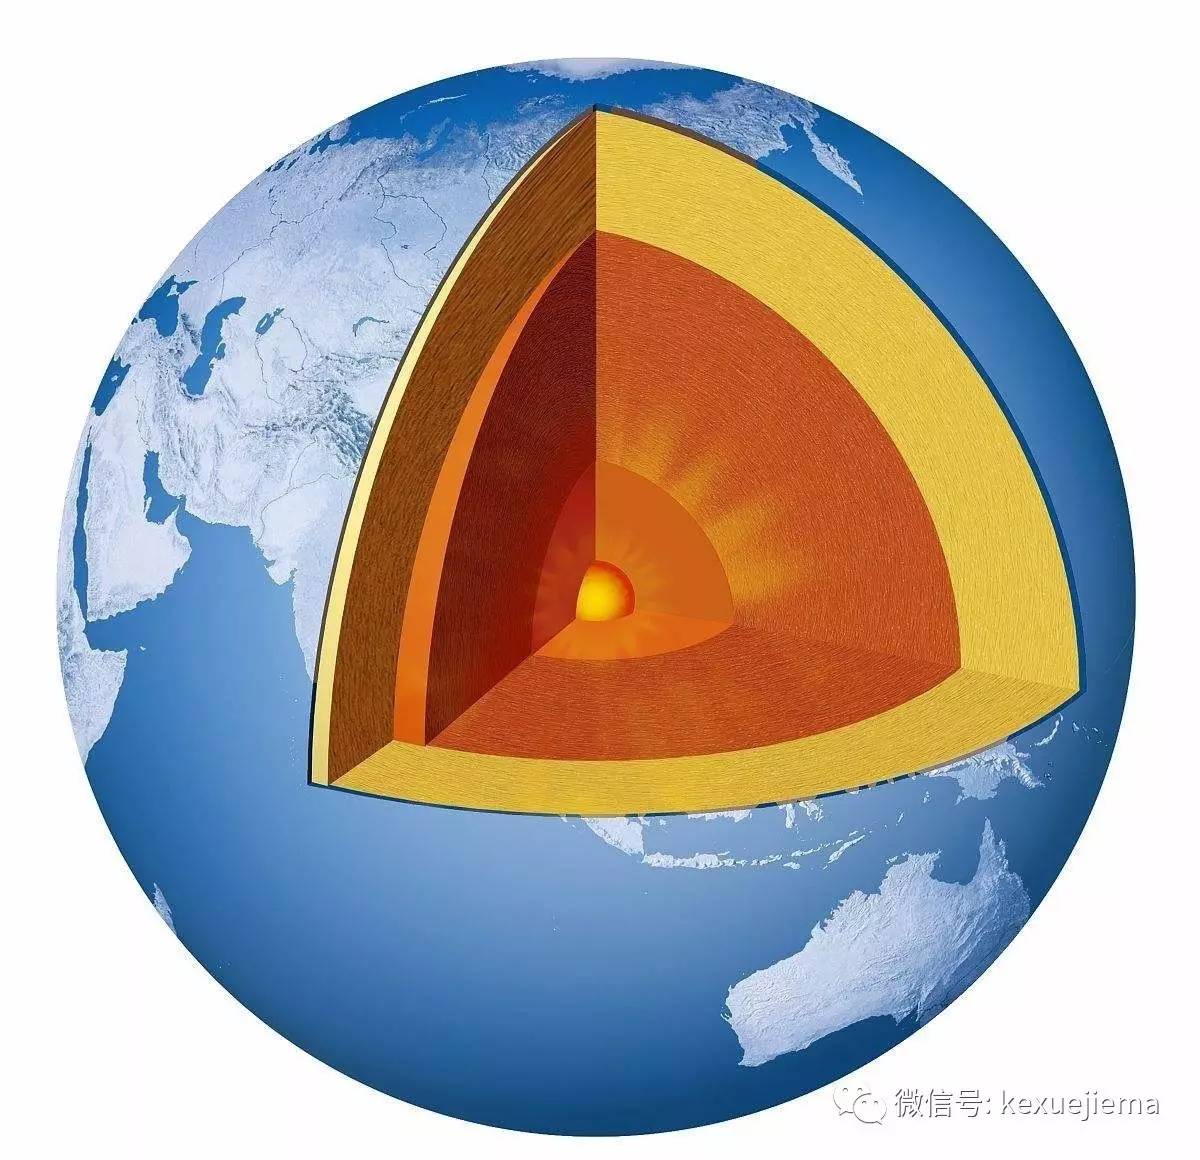 近日,中国科学技术大学地震与地球内部物理实验室温联星教授研究组